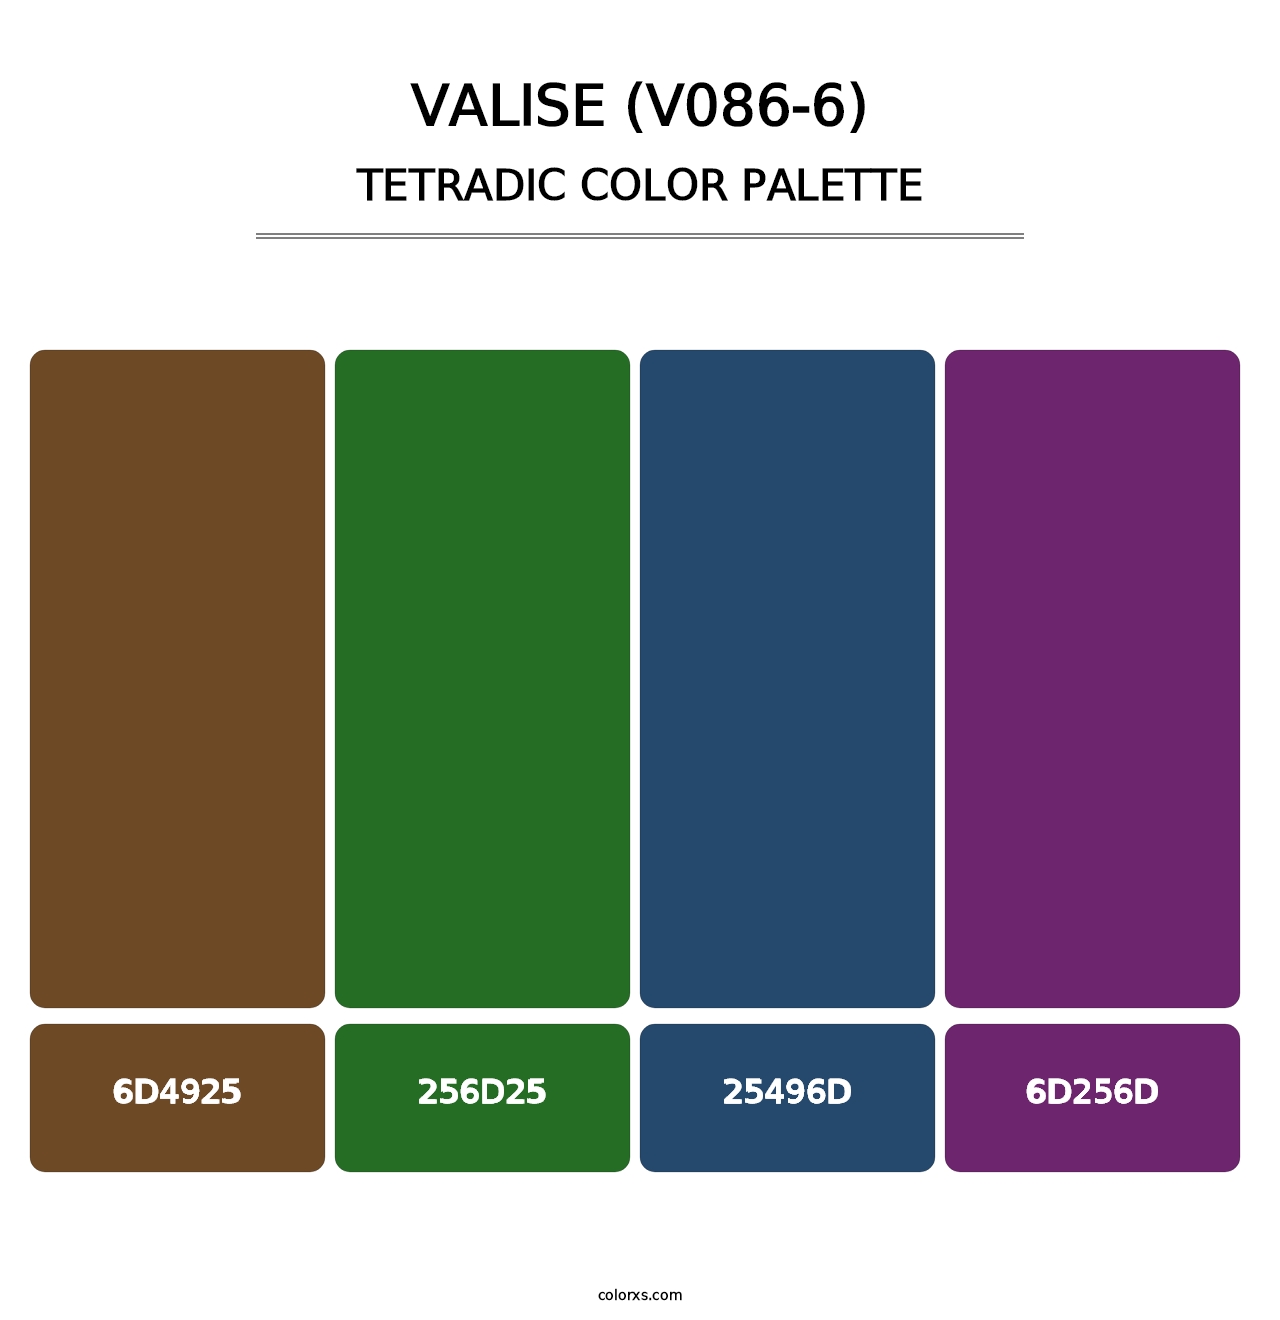 Valise (V086-6) - Tetradic Color Palette